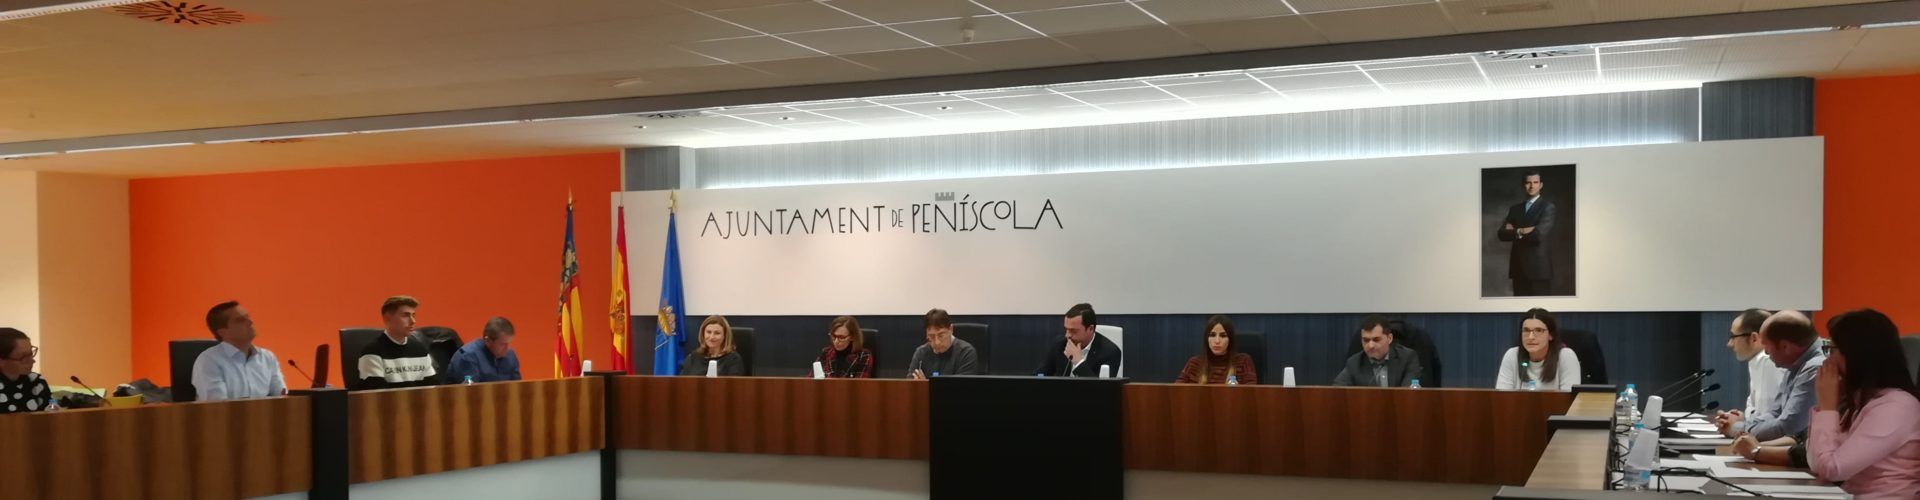 Peñíscola aprueba su presupuesto para 2020 con 15,6 millones de euros